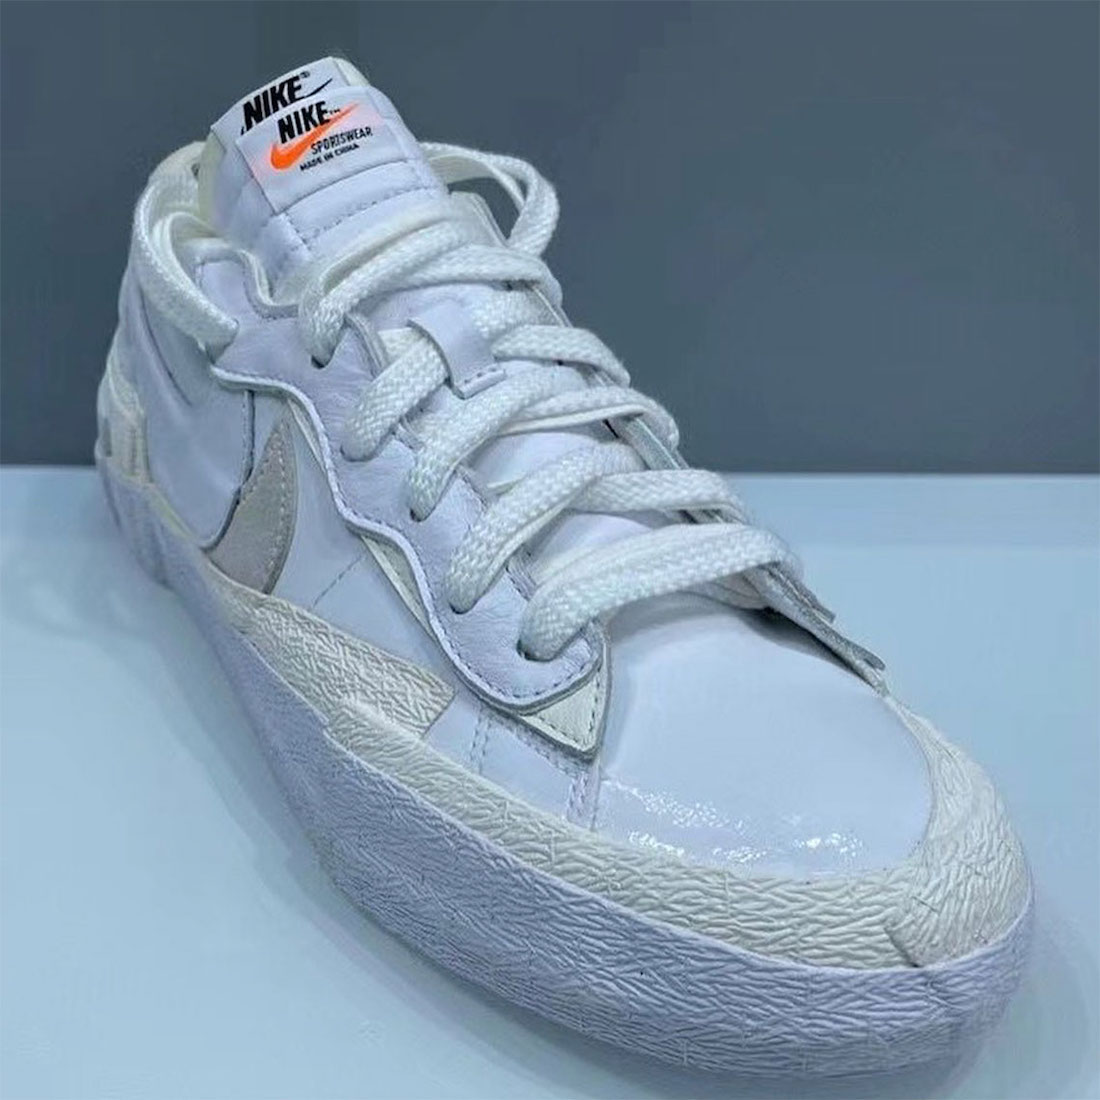 Sacai Nike Blazer Low White Grey DM6443-100 Release Date